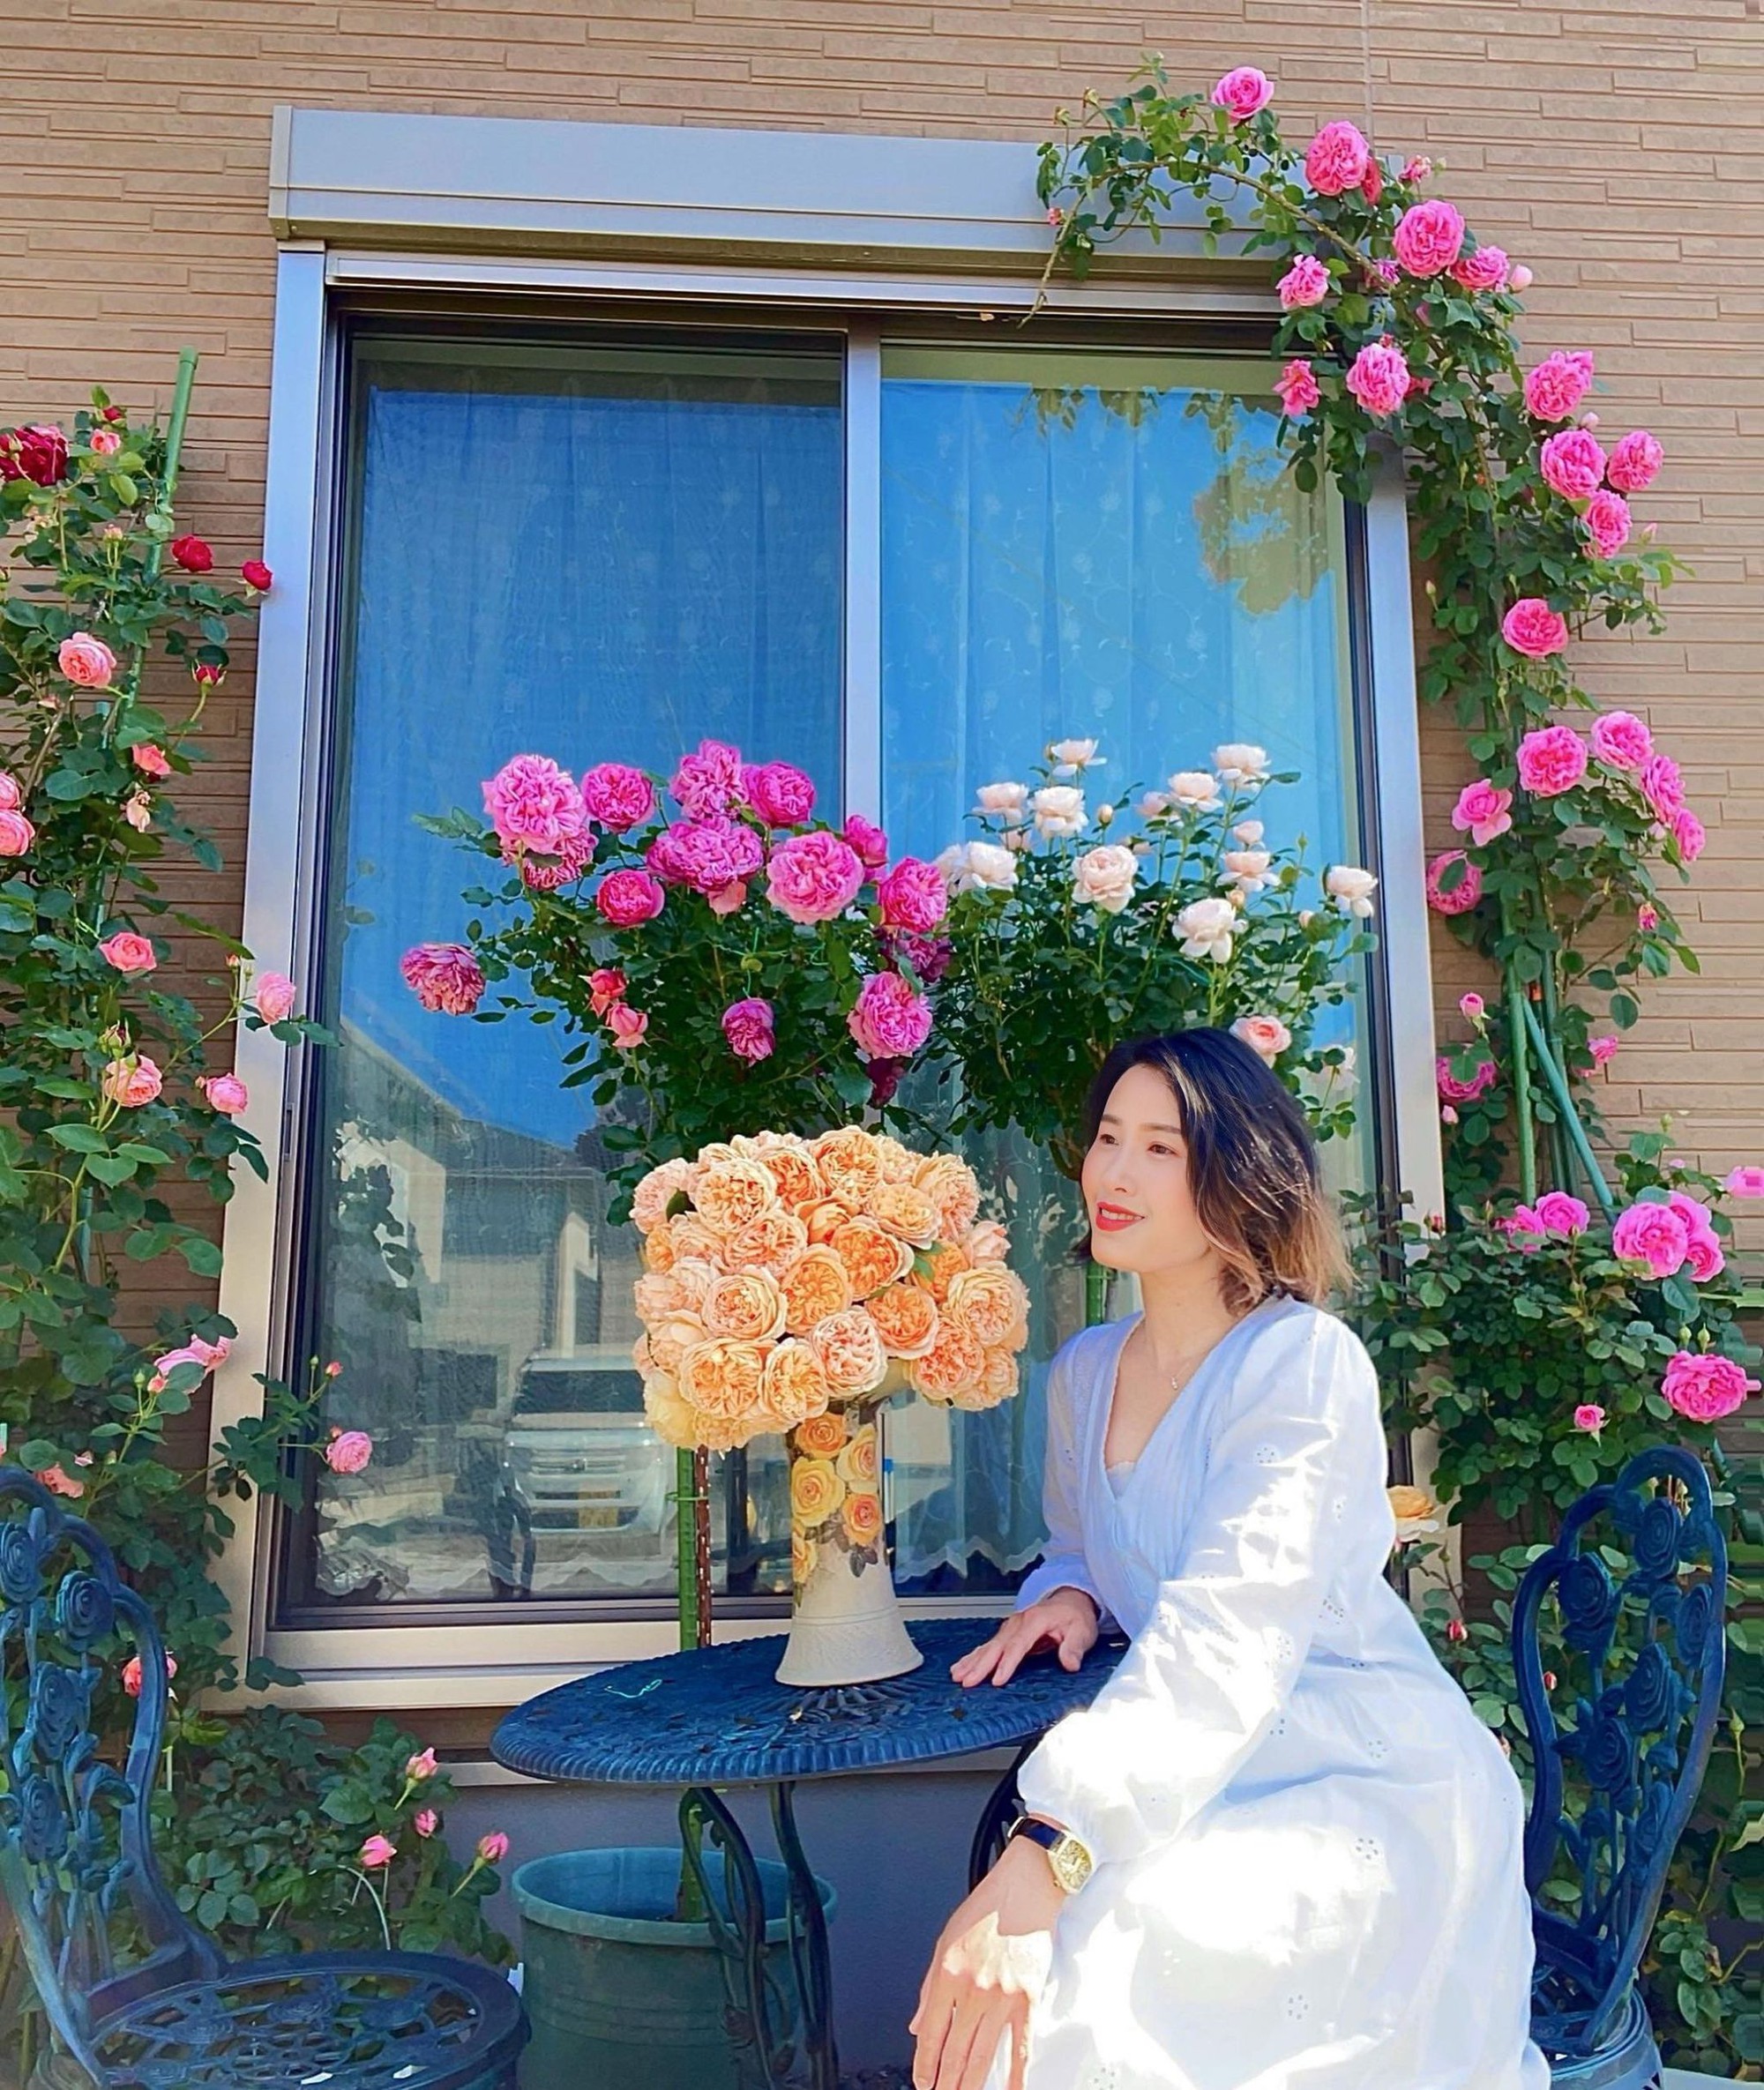 Ngôi nhà lúc nào cũng thơm nức mùi hoa vì có vườn hồng hơn 80 loại của mẹ Việt ở Nhật- Ảnh 20.